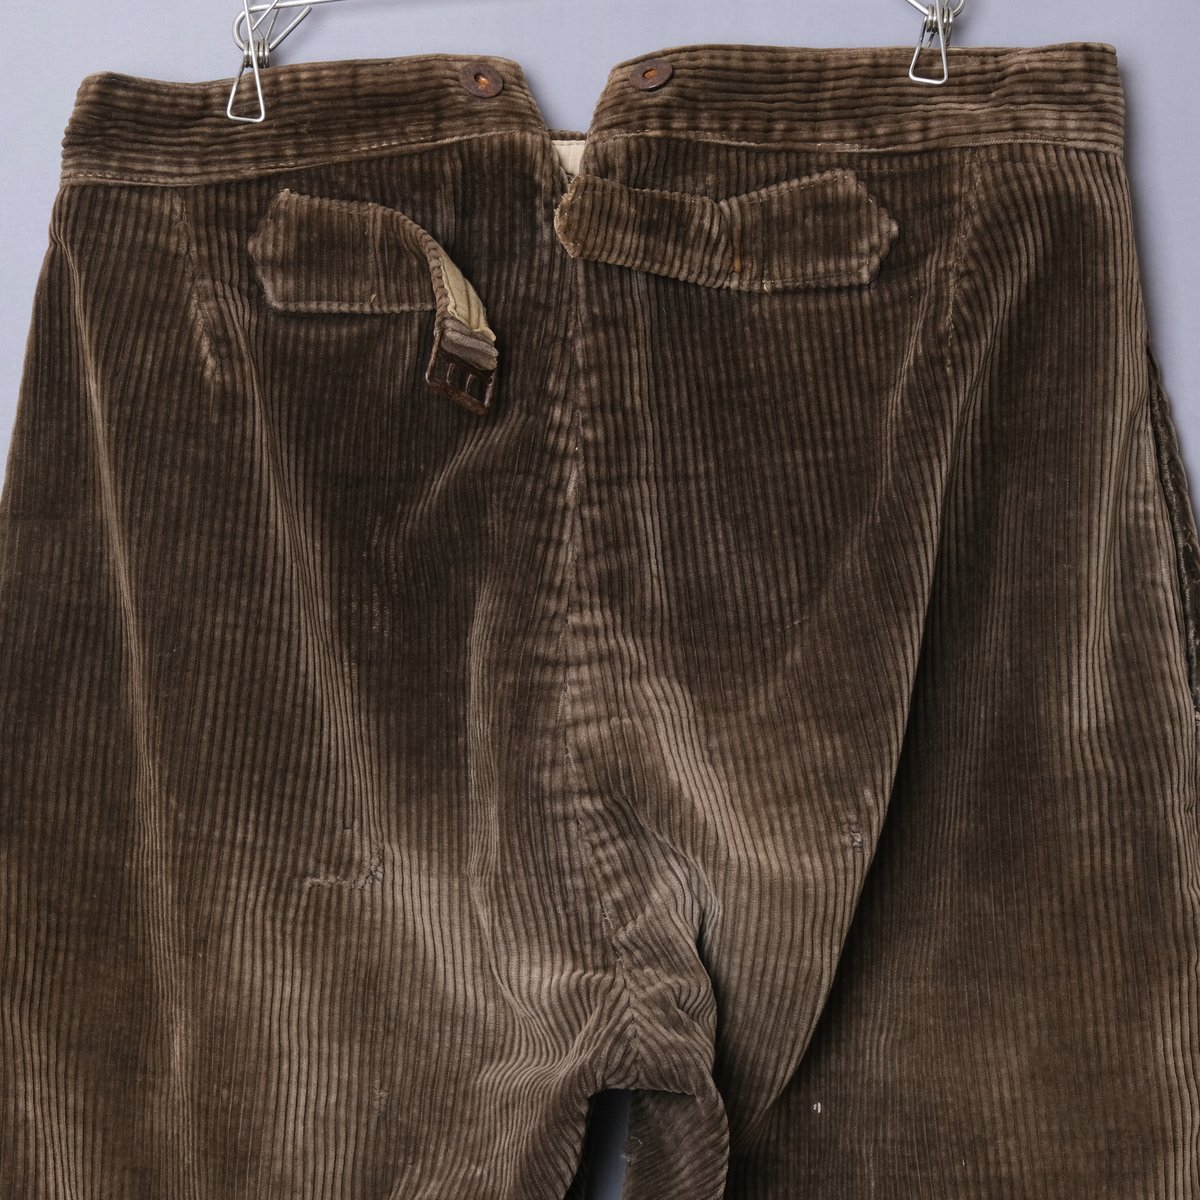 30-40s Le Mont St Michel Jodhpurs Trousers | Ug